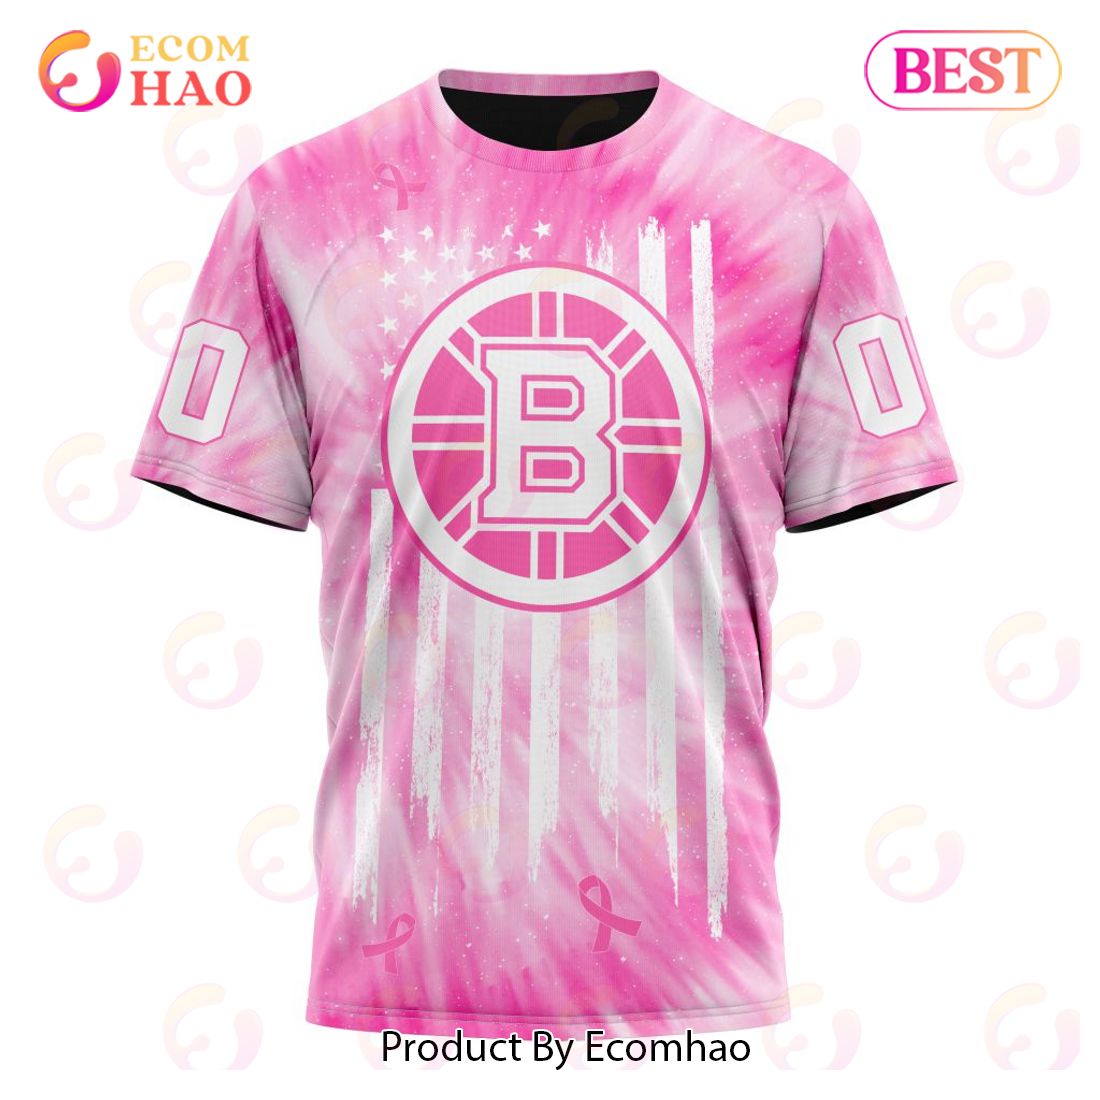 NHL Boston Bruins Special Pink Tie-Dye Breast Cancer 3D Hoodie